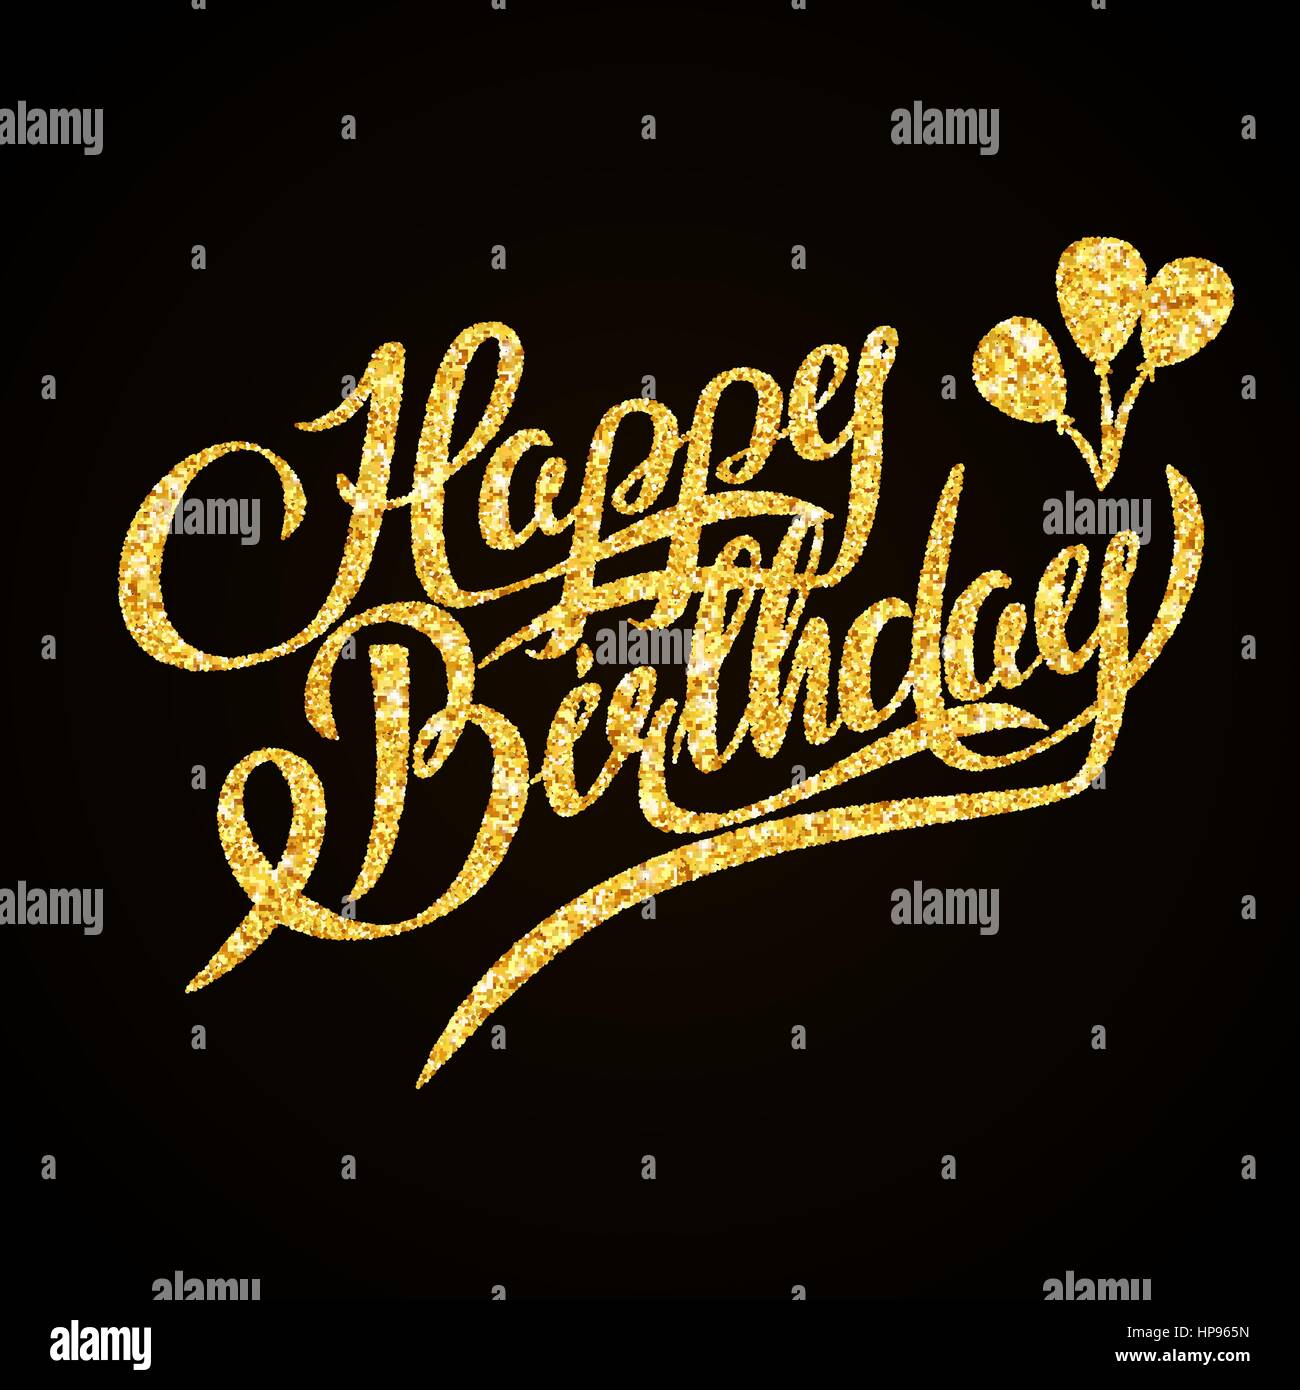 Bộ chữ vàng rực rỡ sinh nhật tạo ra sự kiêu hãnh và đặc biệt hoàn hảo cho bữa tiệc sinh nhật. Bức ảnh sẽ cho thấy sự lịch lãm và ấm áp trong không gian vui tươi của ngày sinh nhật.